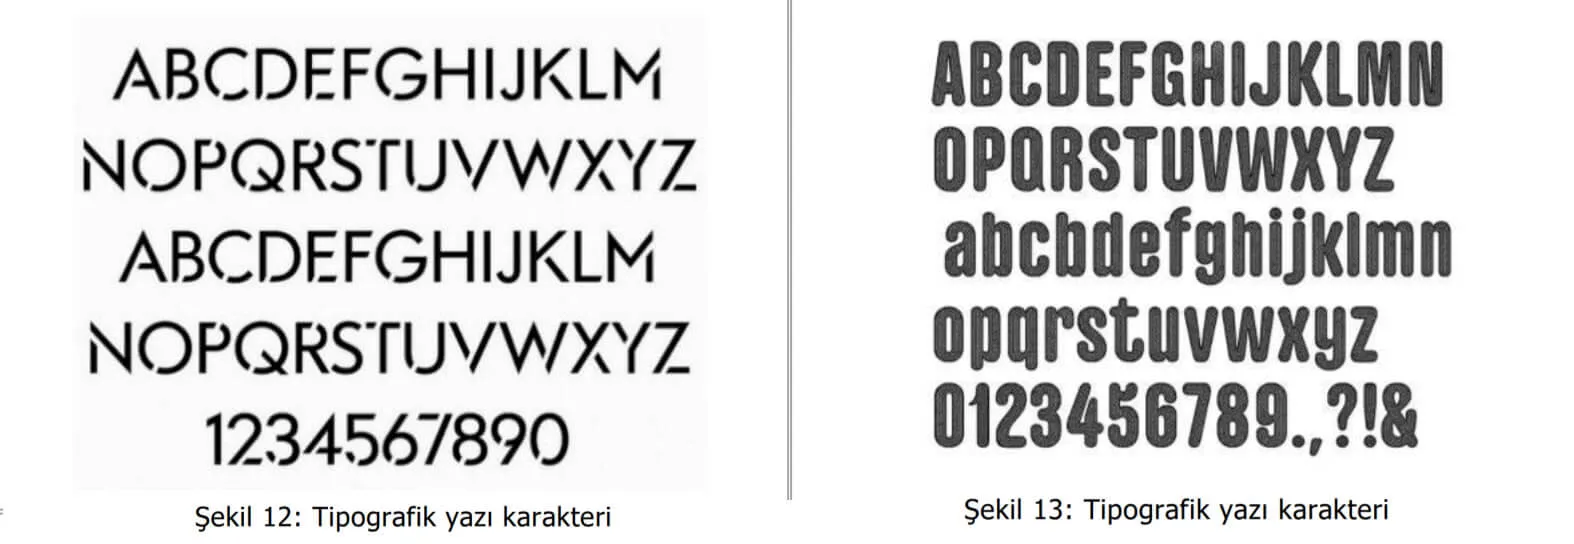 tipografik yazı karakter örnekleri-Malatya Patent